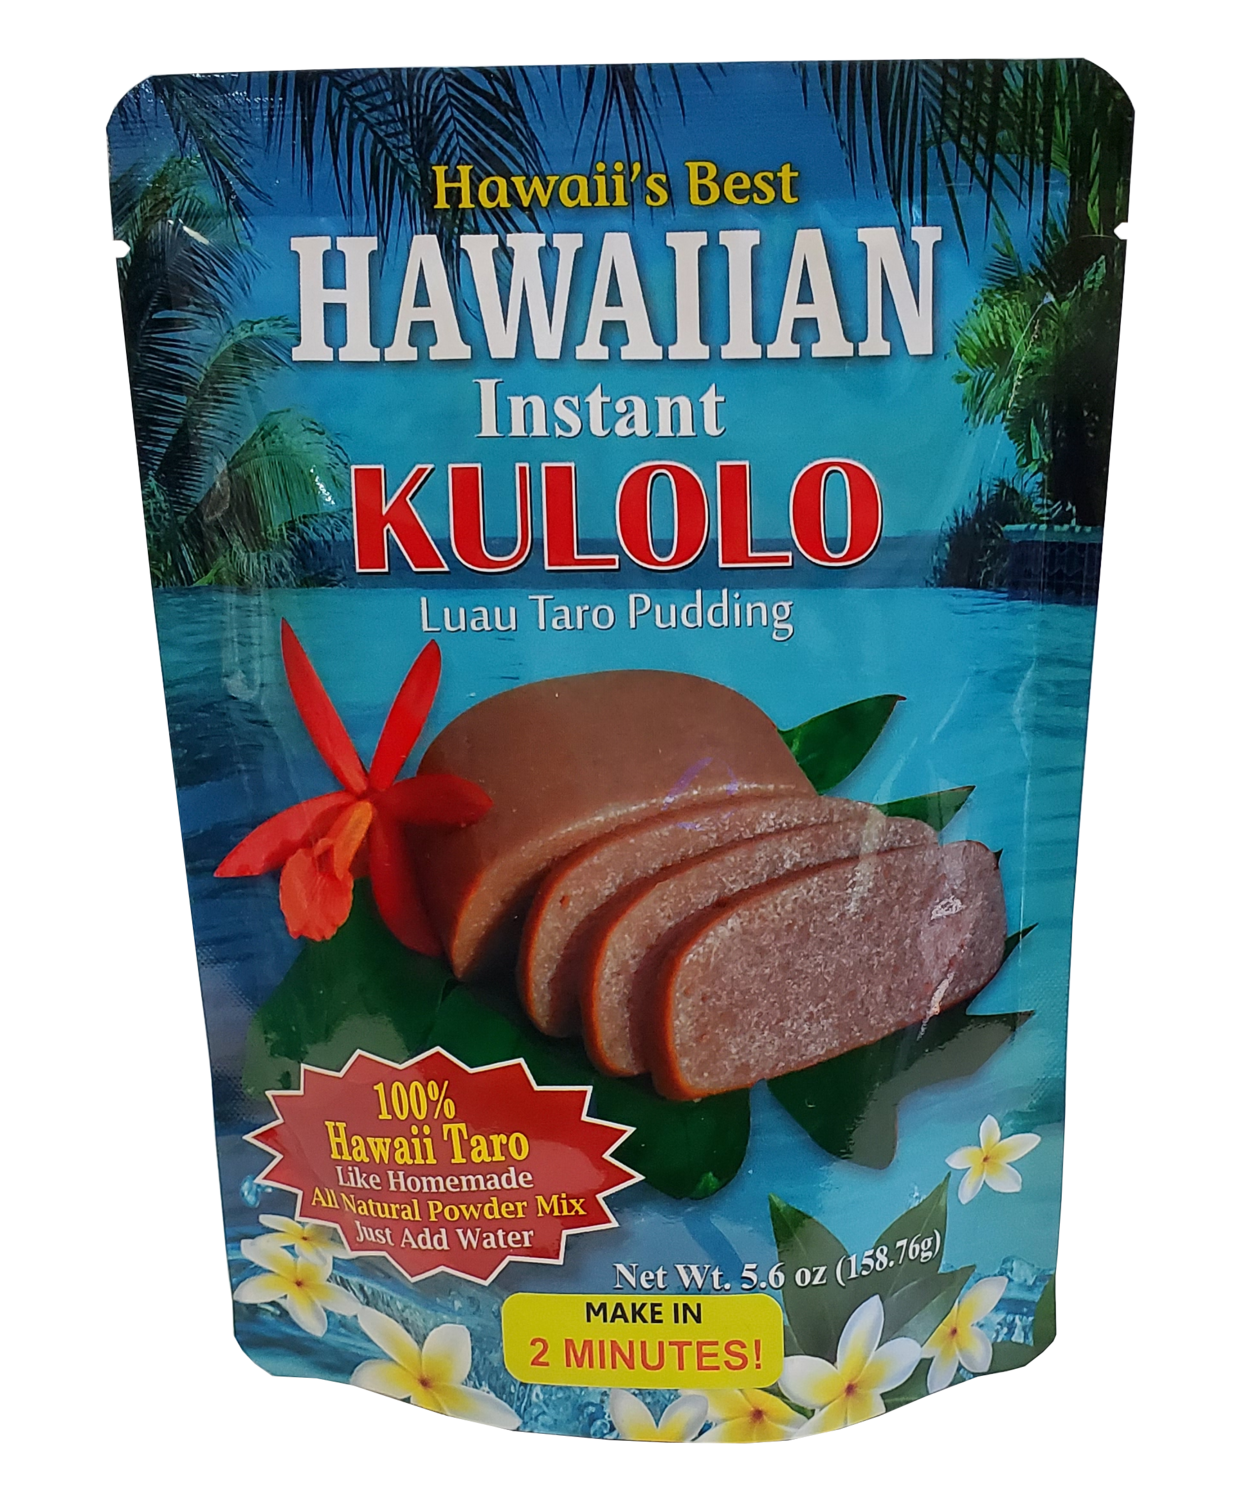 Hawaii's Best Hawaiian Instant Kulolo-Luau Taro Pudding 5.6oz